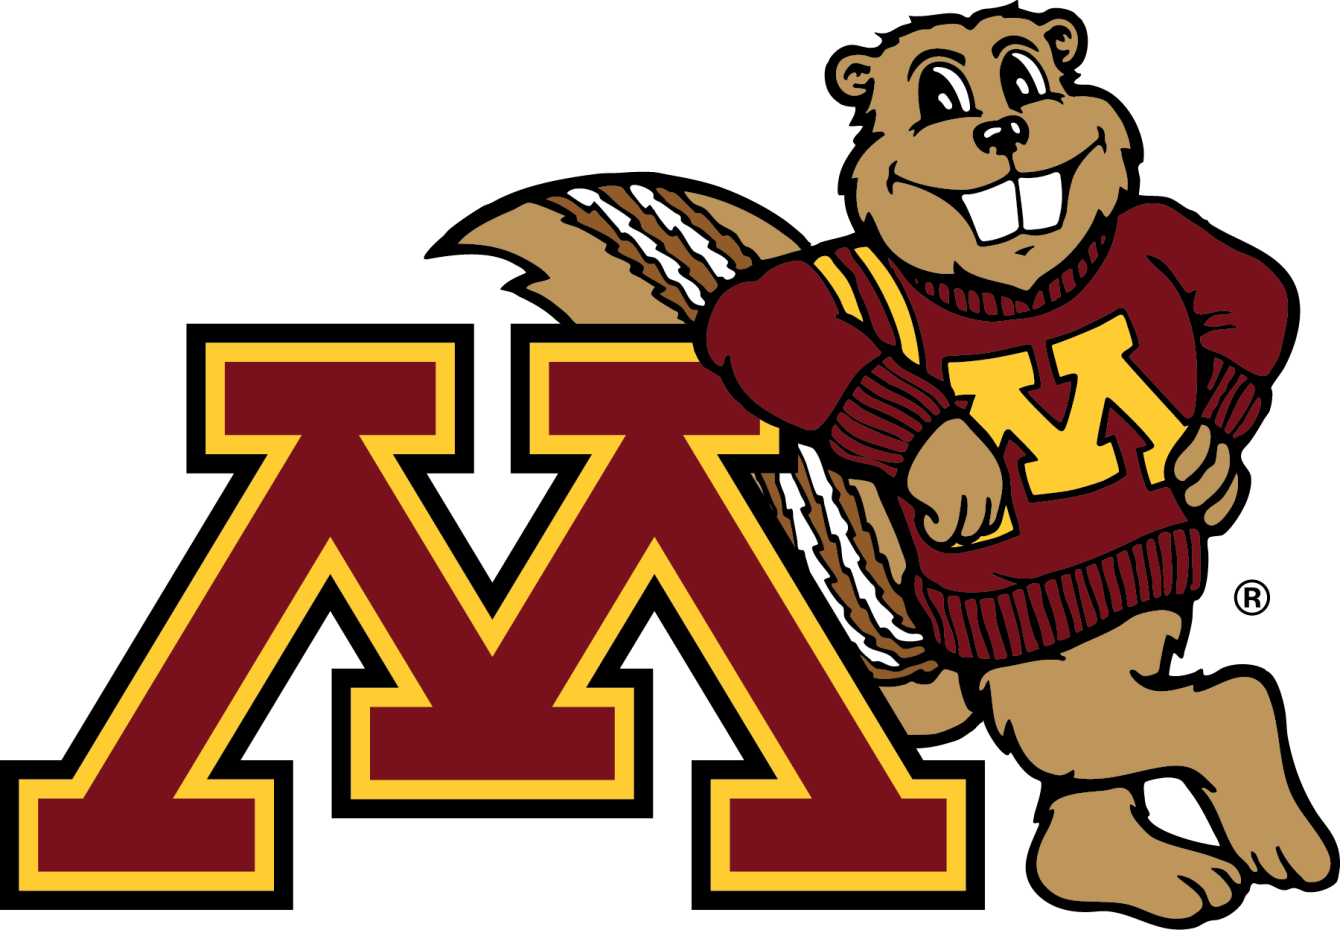 University of Minnesota Twin Cities Mascot Goldy